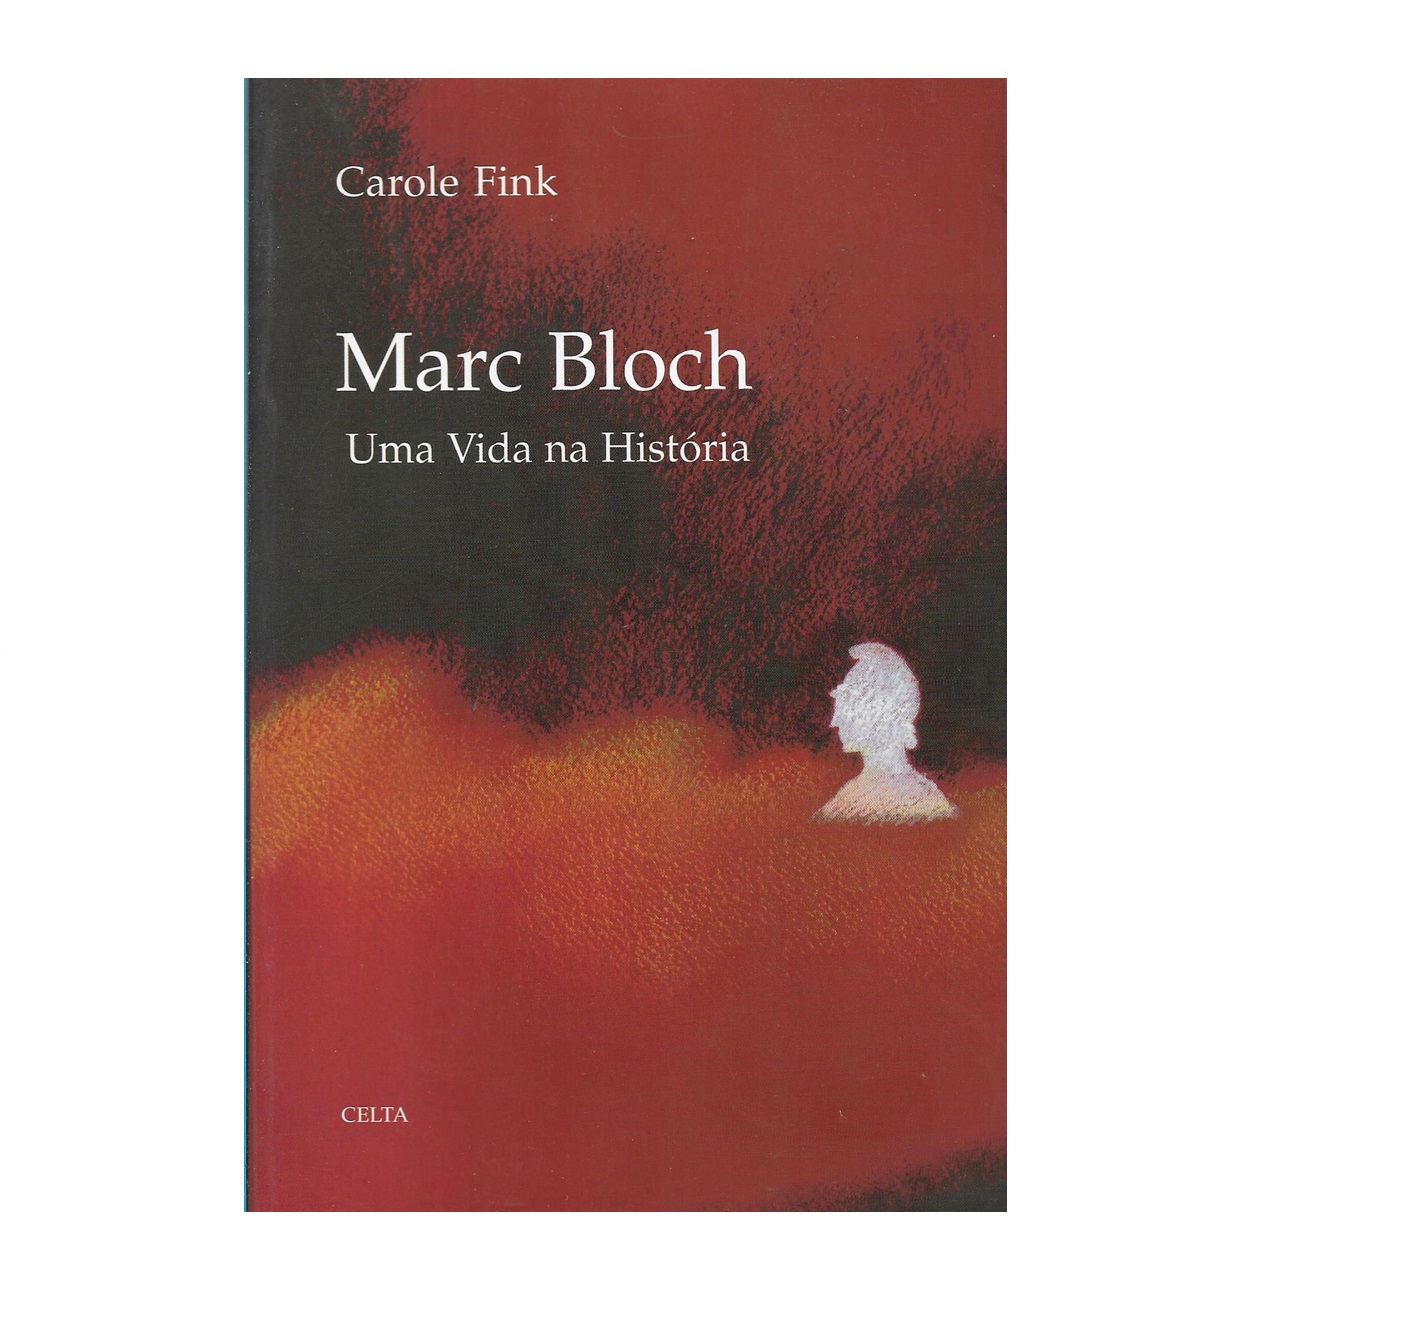  Marc Bloch: Uma vida na história.